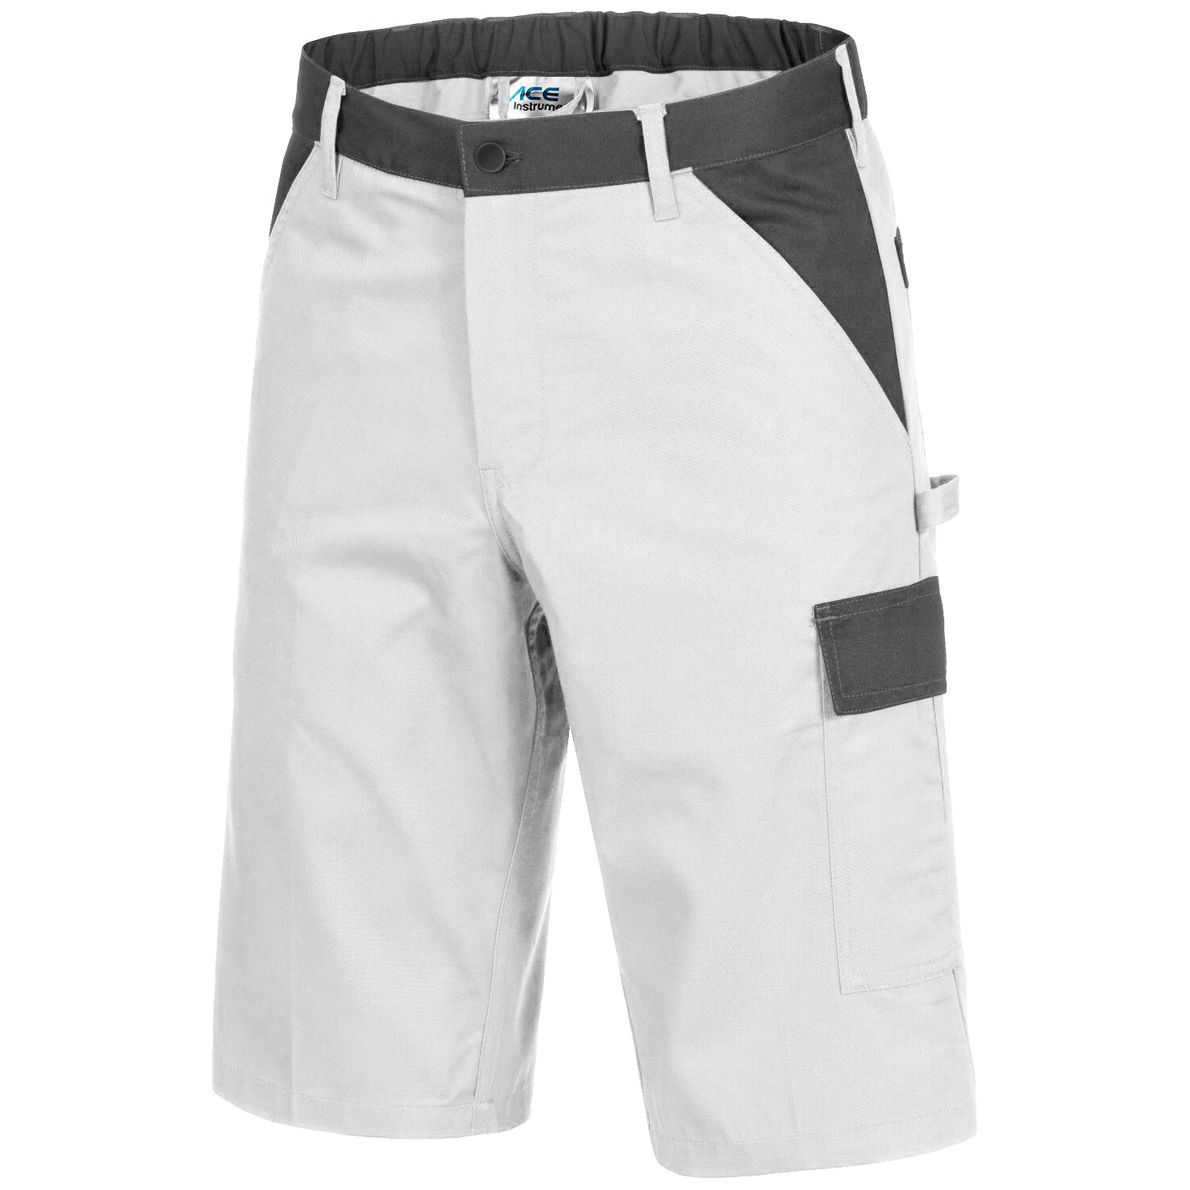 ACE Handyman Maler-Arbeitshosen - Cargo-Shorts für die Arbeit - Weiß - 60